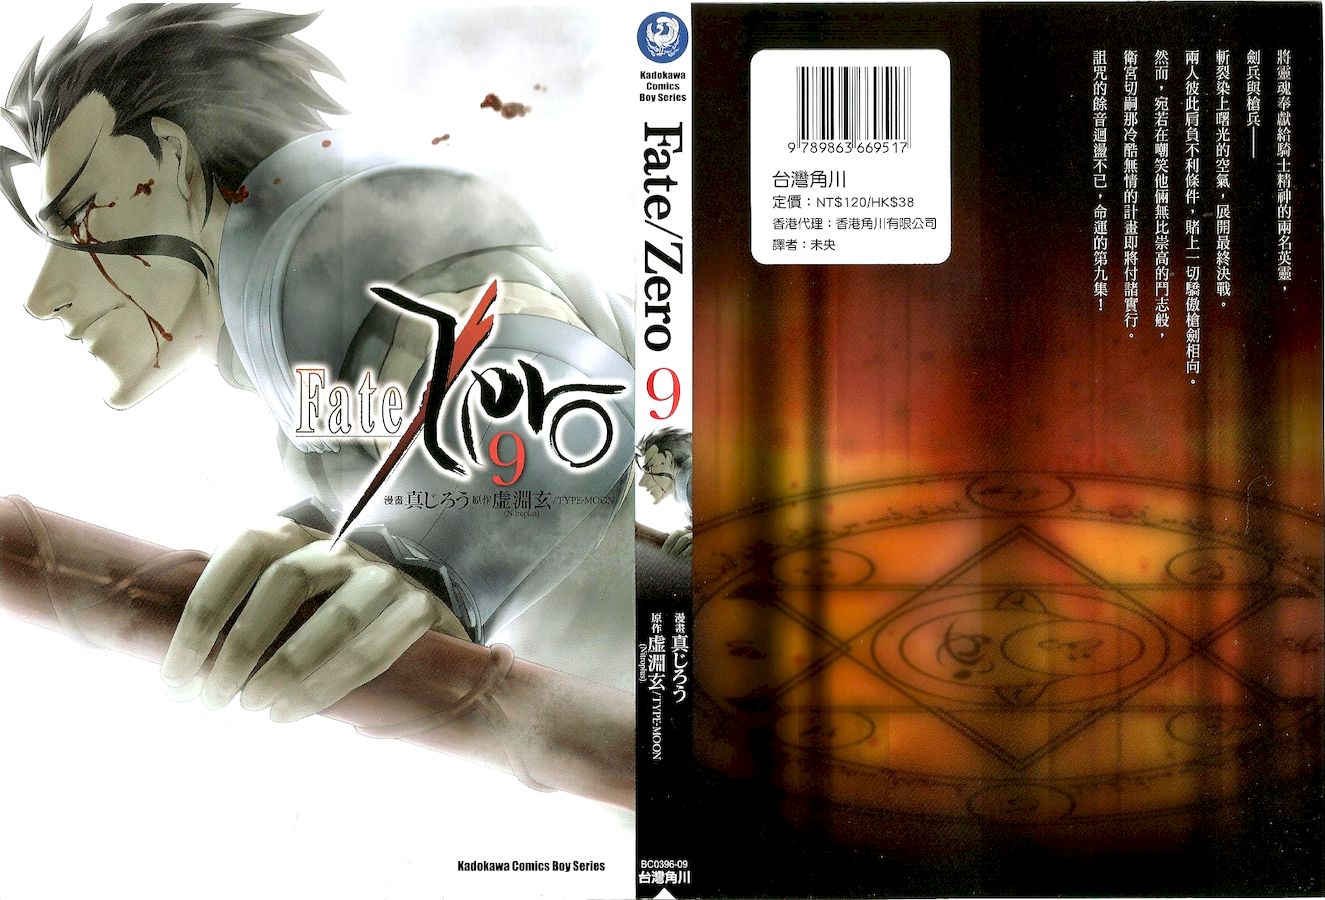 Fate Zero 第09卷 漫畫線上看 動漫戲說 Acgn Cc